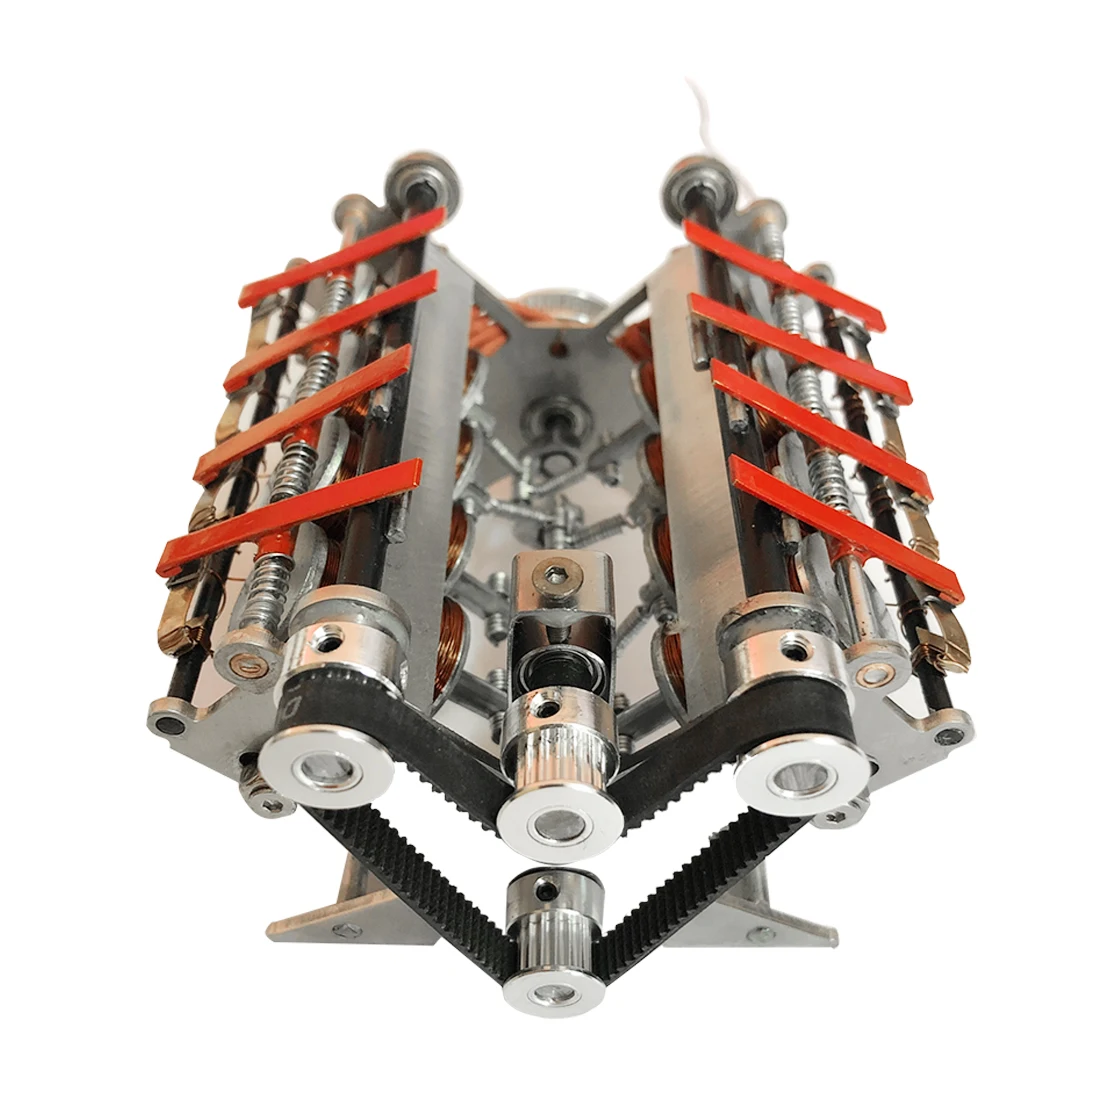 

24v V8 Electromagnetic Engine Model DIY Runnable High-Speed Generator Teaching Motor Model For Children Educational Toys Gift